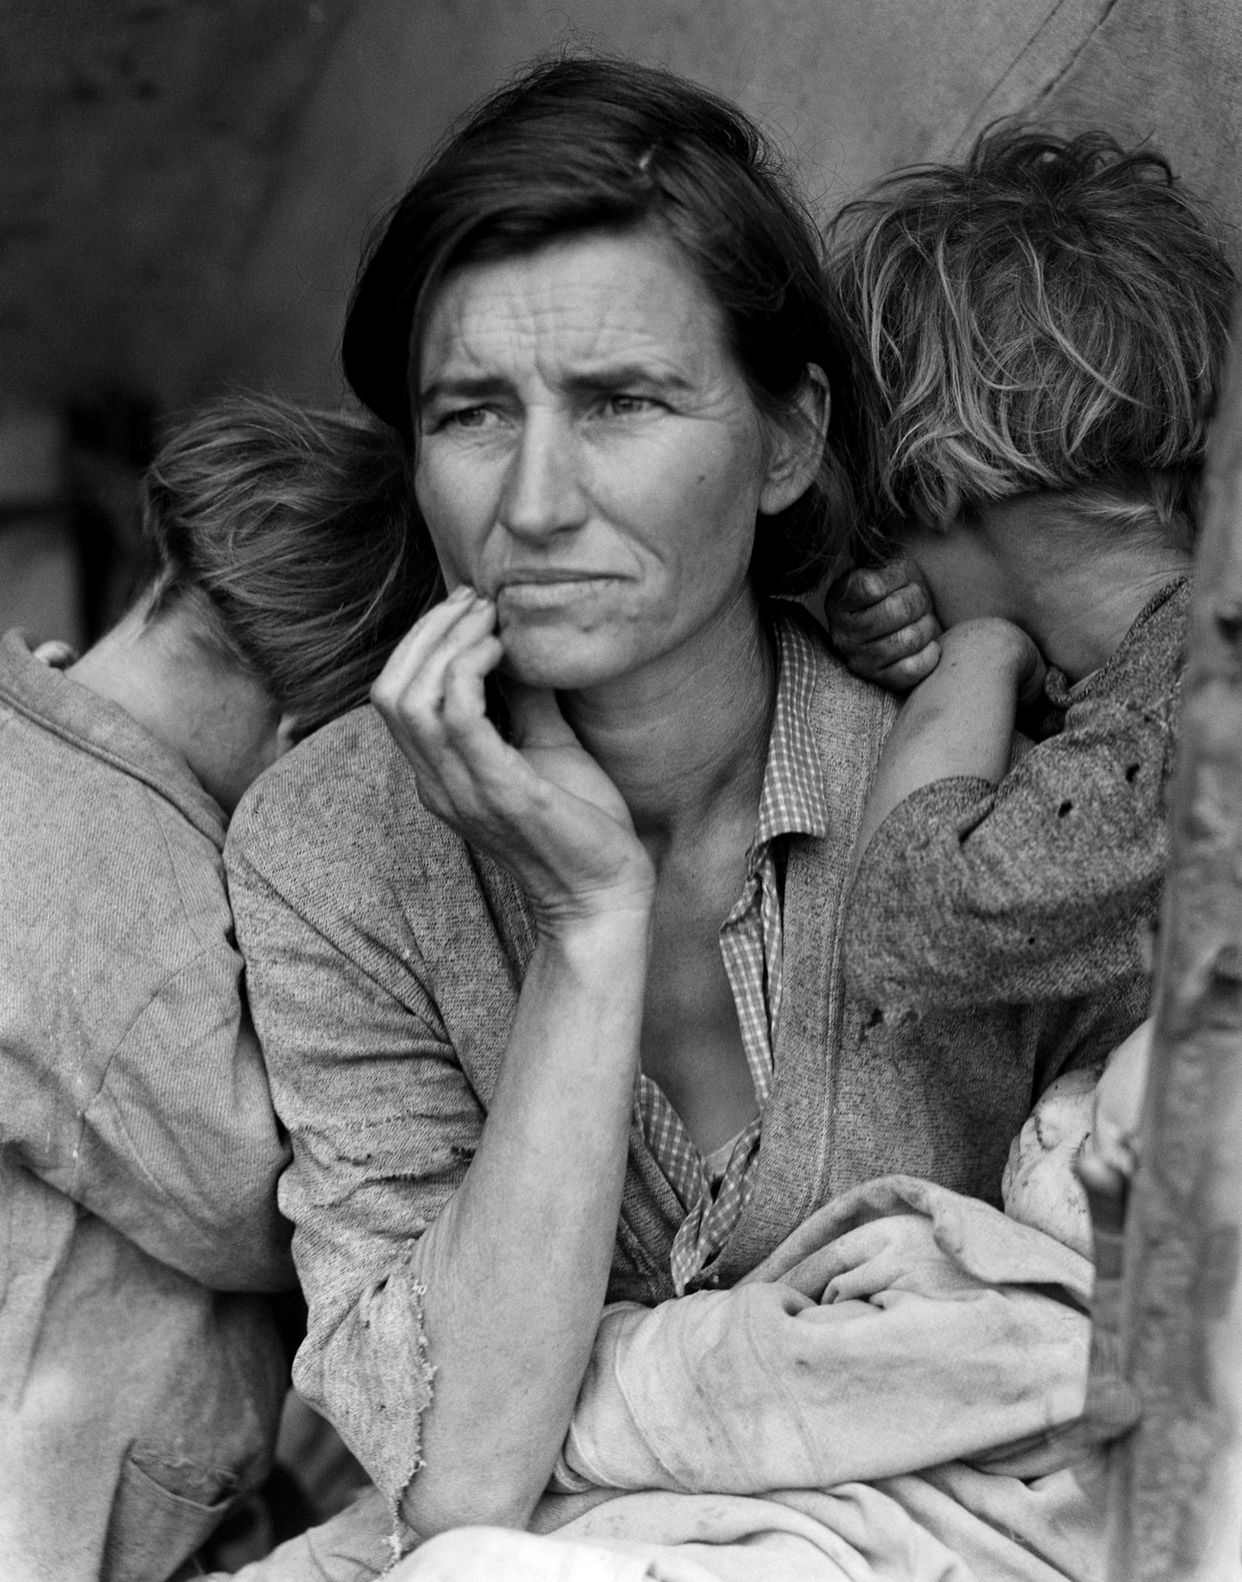 Kim była ”Migrująca matka”? Historia najbardziej znanego zdjęcia Dorothei Lange